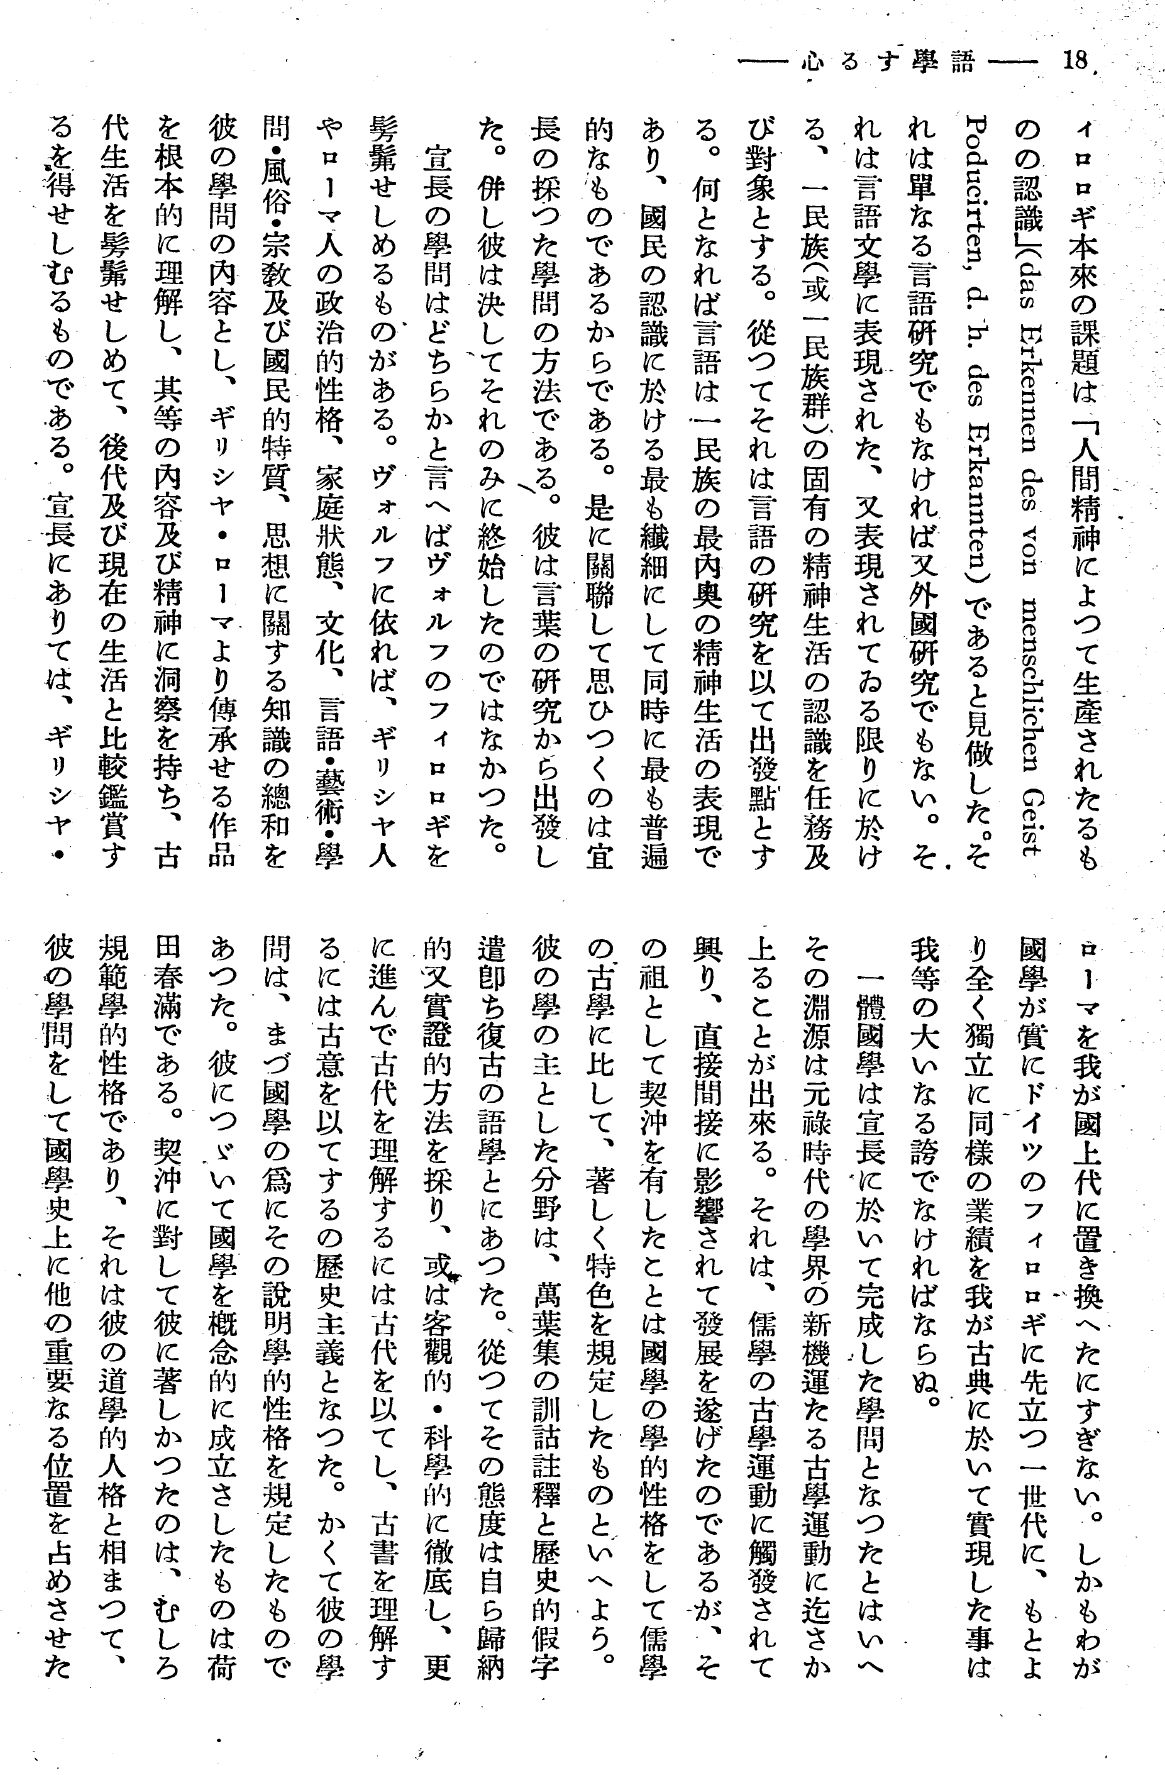 報國団雑誌 第19号 108 西尾孝 語学する心08.jpg